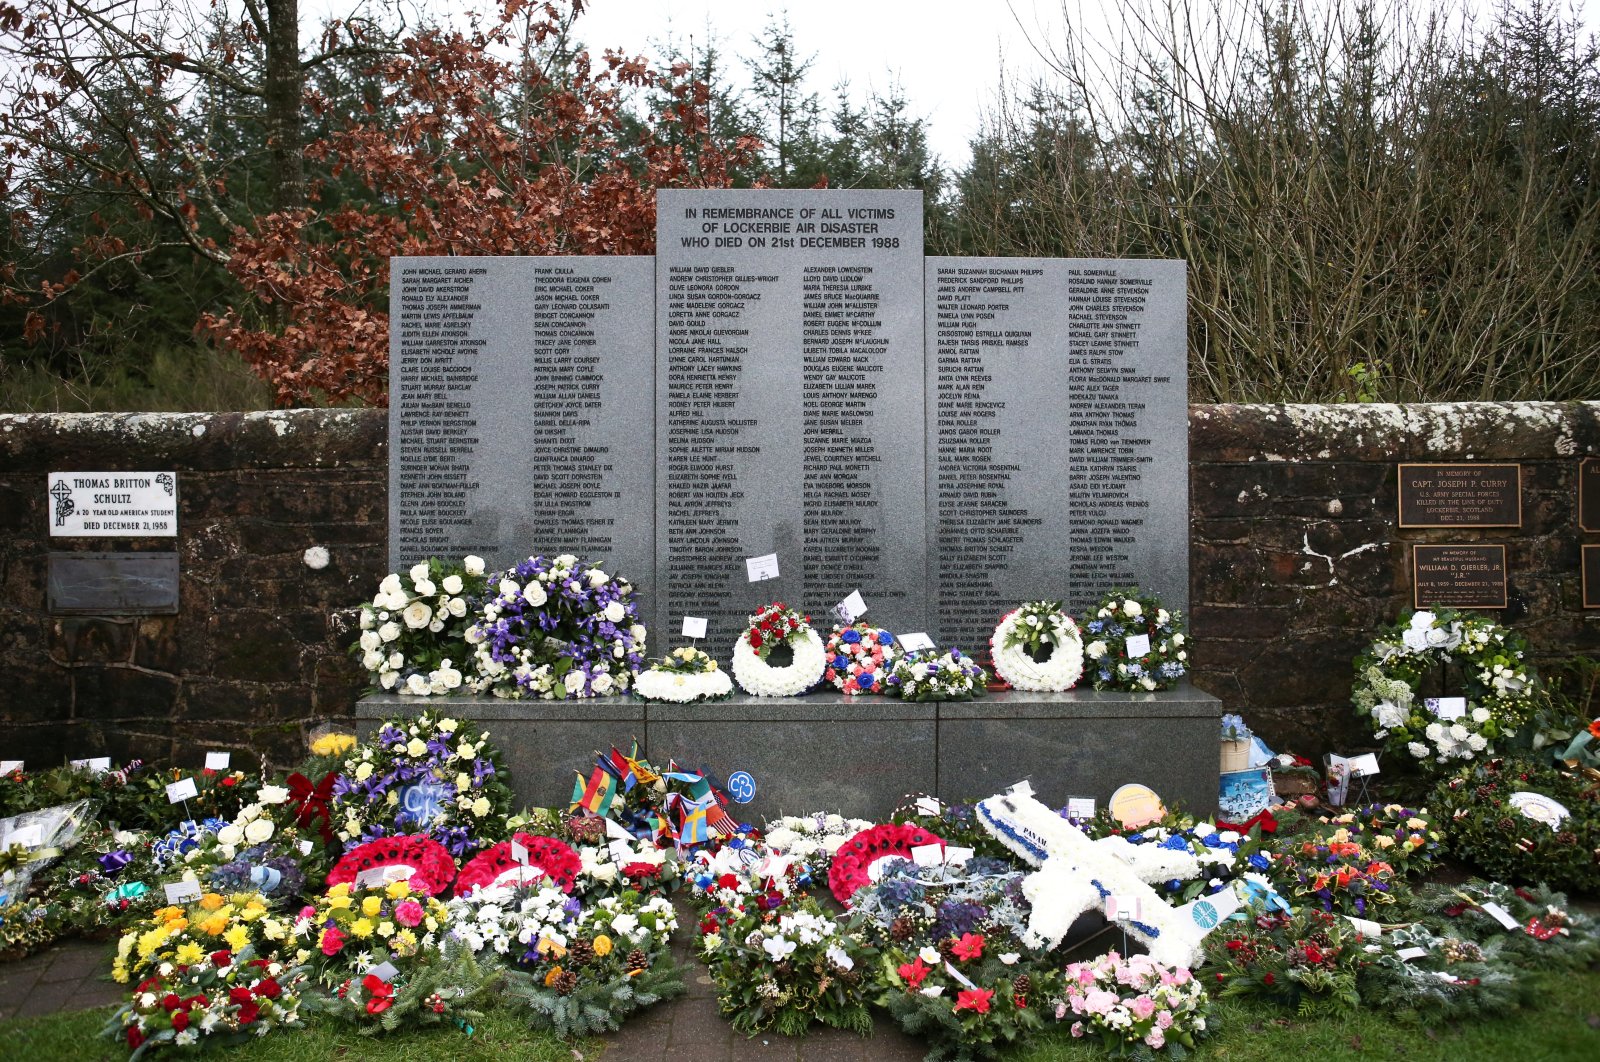 Tersangka pengeboman pesawat Lockerbie dibawa ke tahanan AS